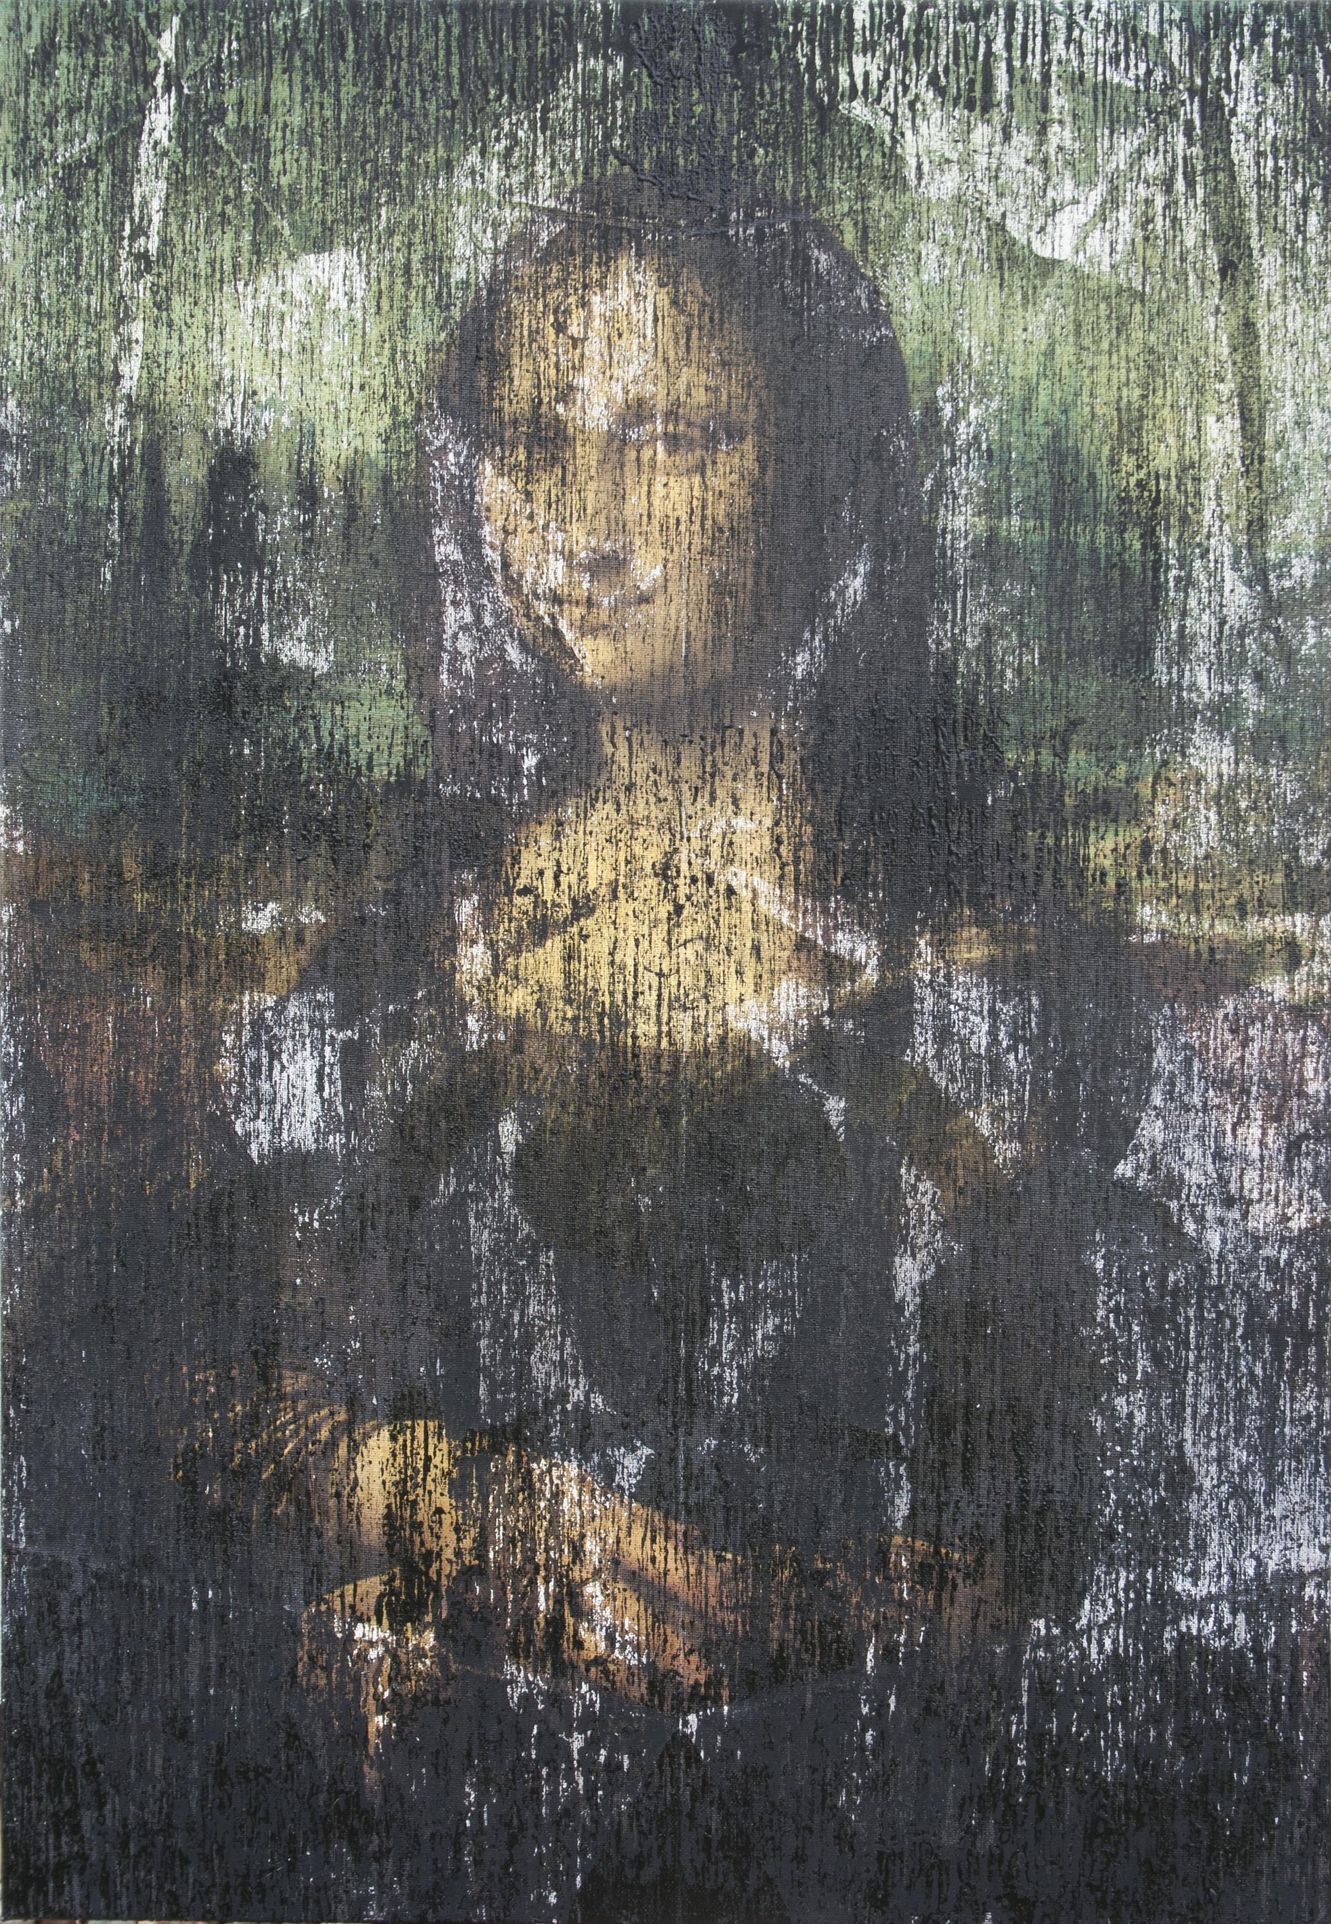 Patrik Hábl: Leonardo da Vinci - La Gioconda (Mona Lisa)